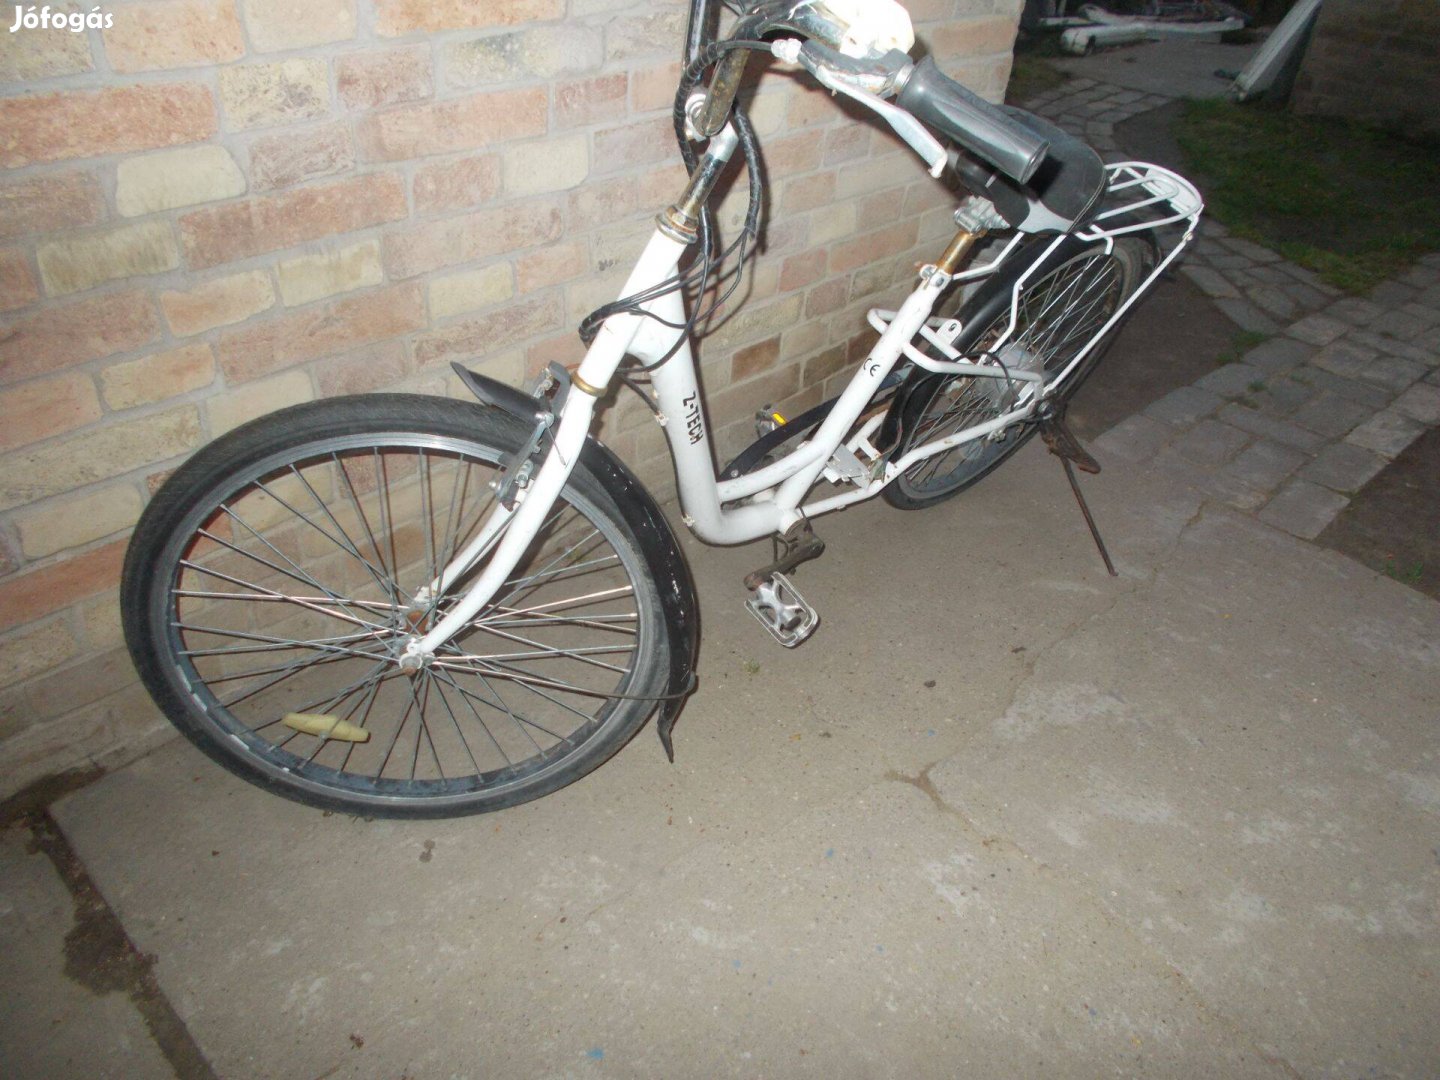 Eladó a képen látható elektromos kerékpár fellelt állapotban